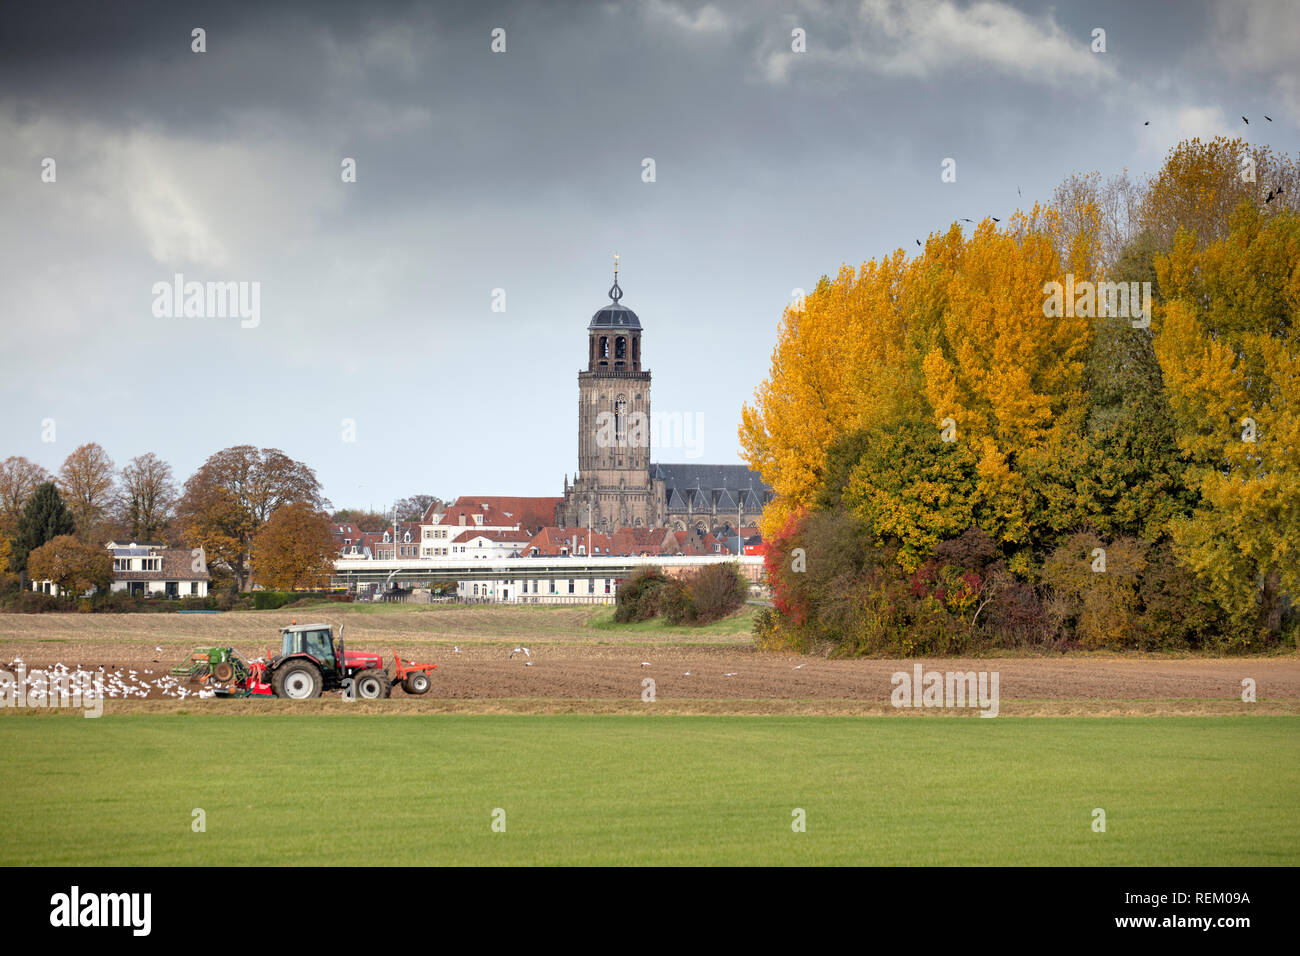 Les Pays-Bas, Deventer, tracteur, terres agricoles, église, couleurs d'automne. Banque D'Images